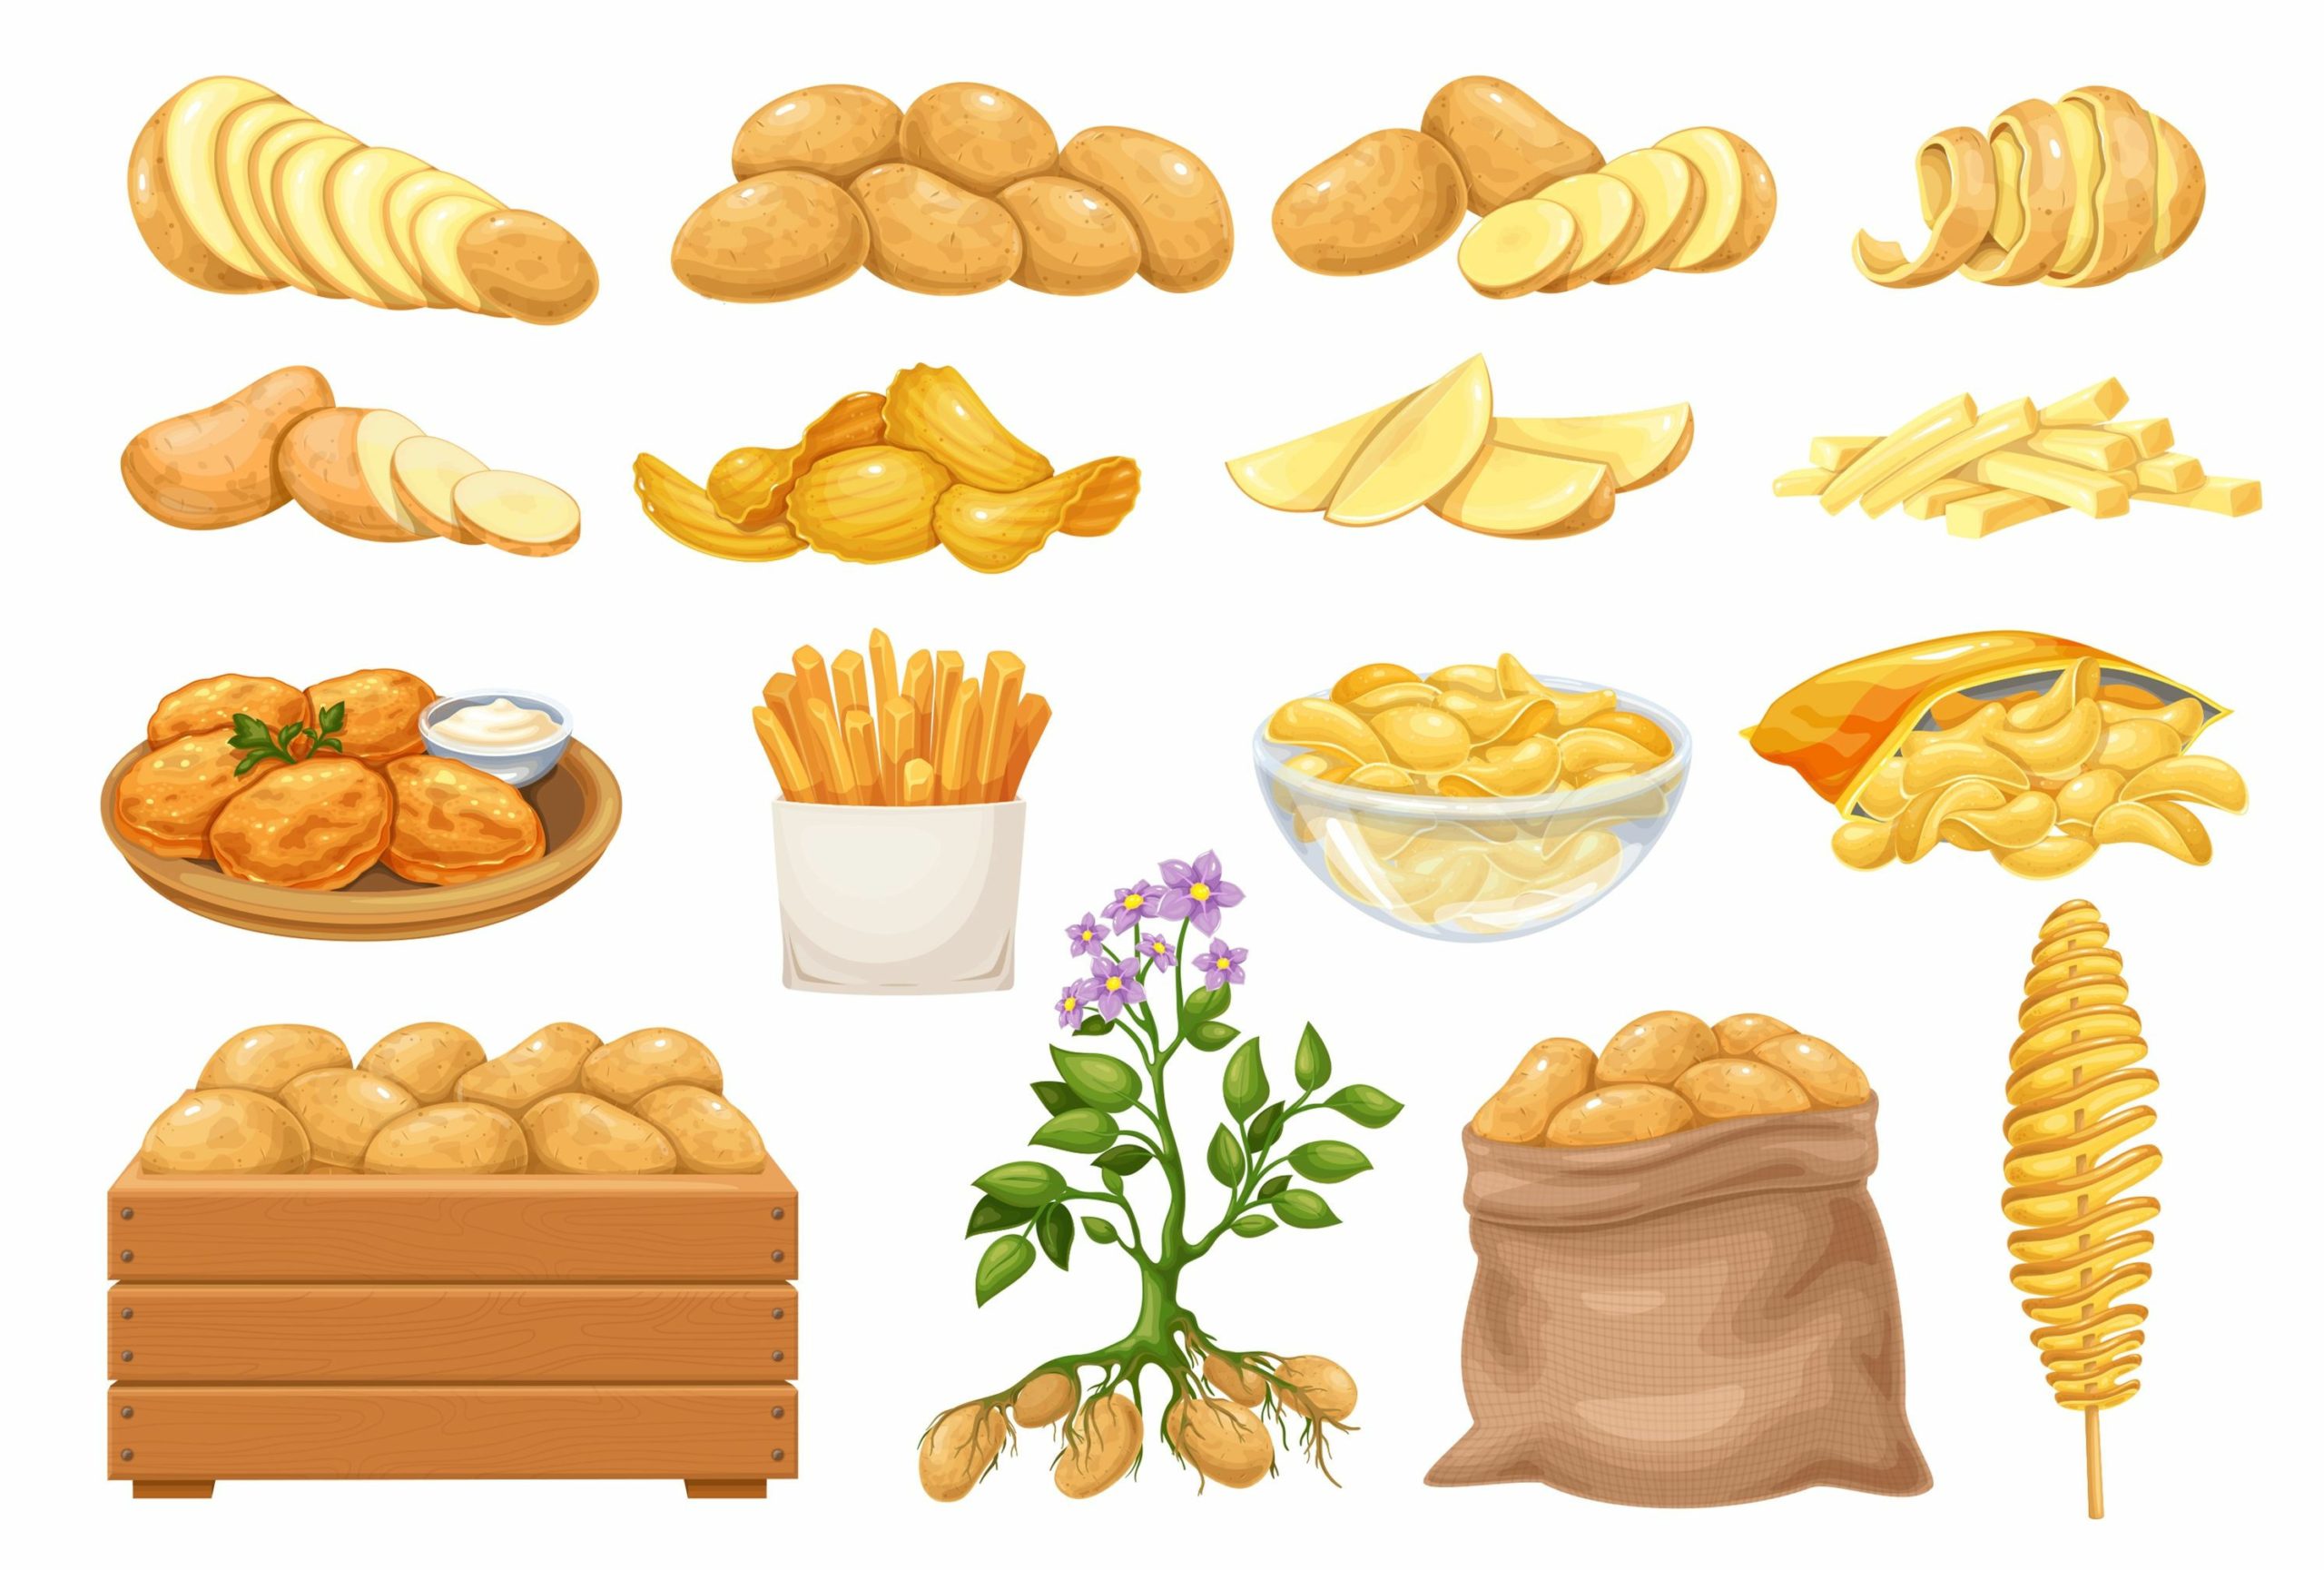 فوائد البطاطا تختلف حسب اختلاف طريقة الطهي/ Shutterstock